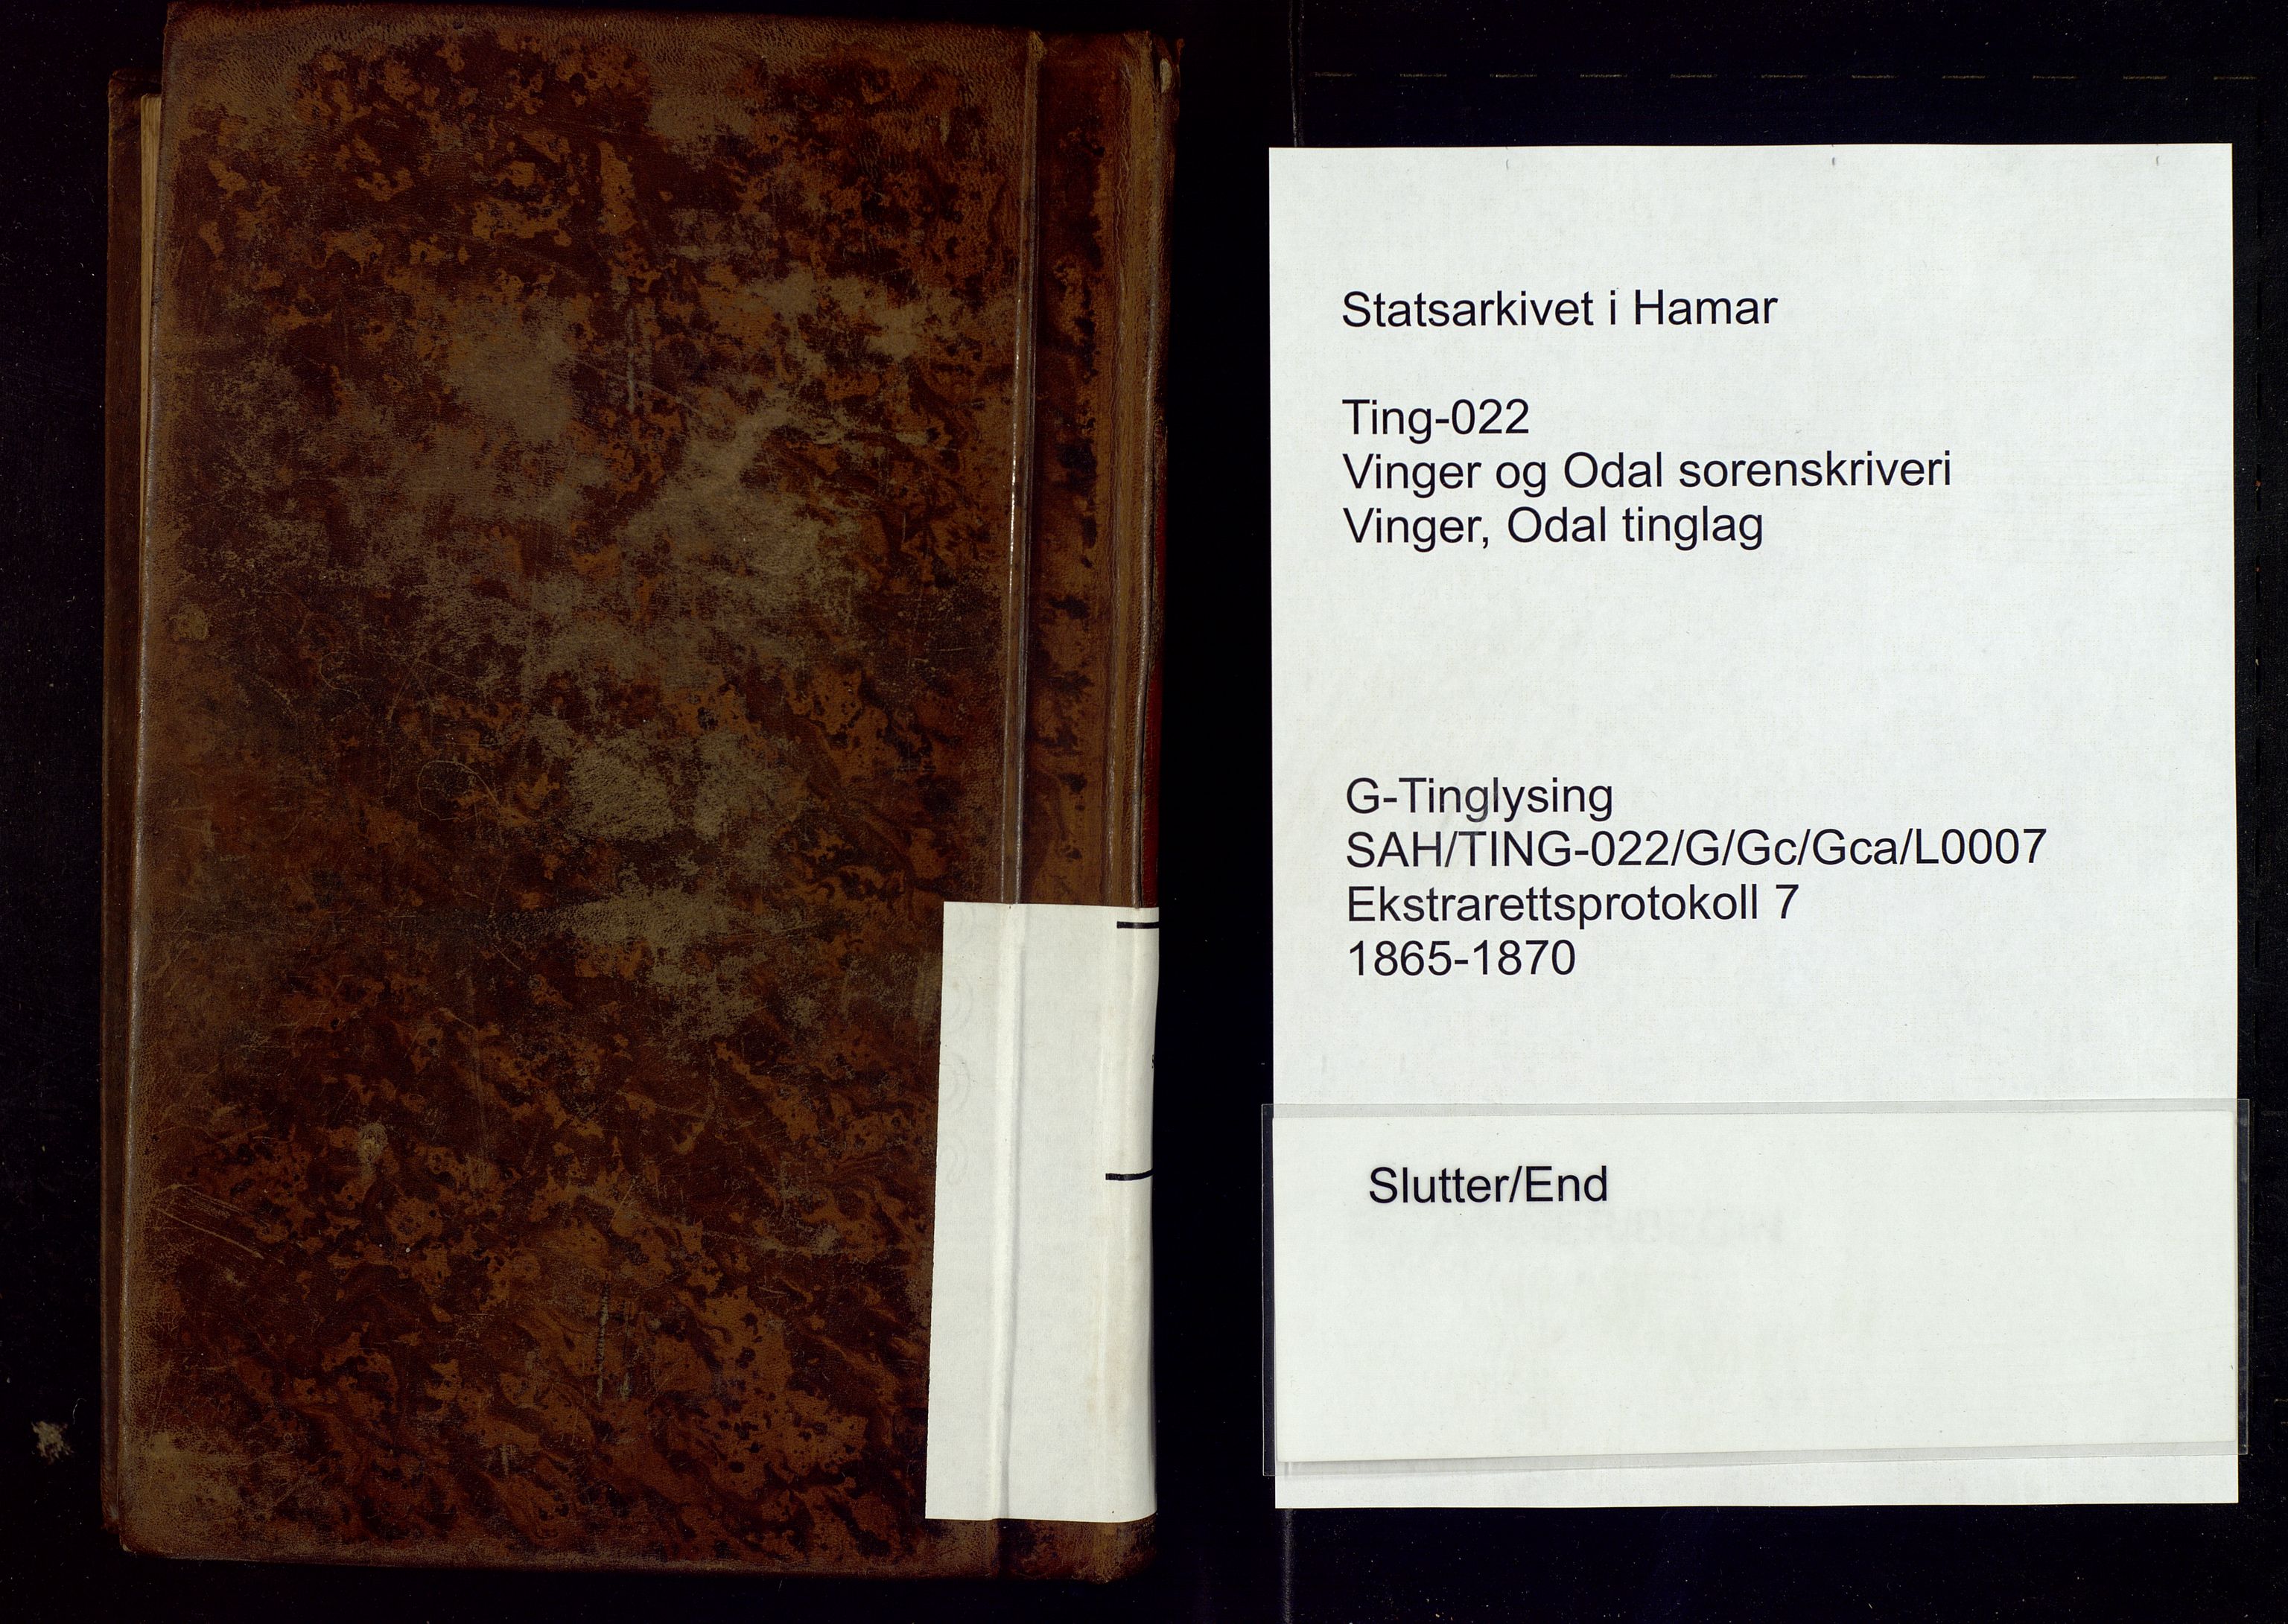 Vinger og Odal sorenskriveri, SAH/TING-022/G/Gc/Gca/L0007: Ekstrarettsprotokoll - Vinger og Odal, 1865-1870